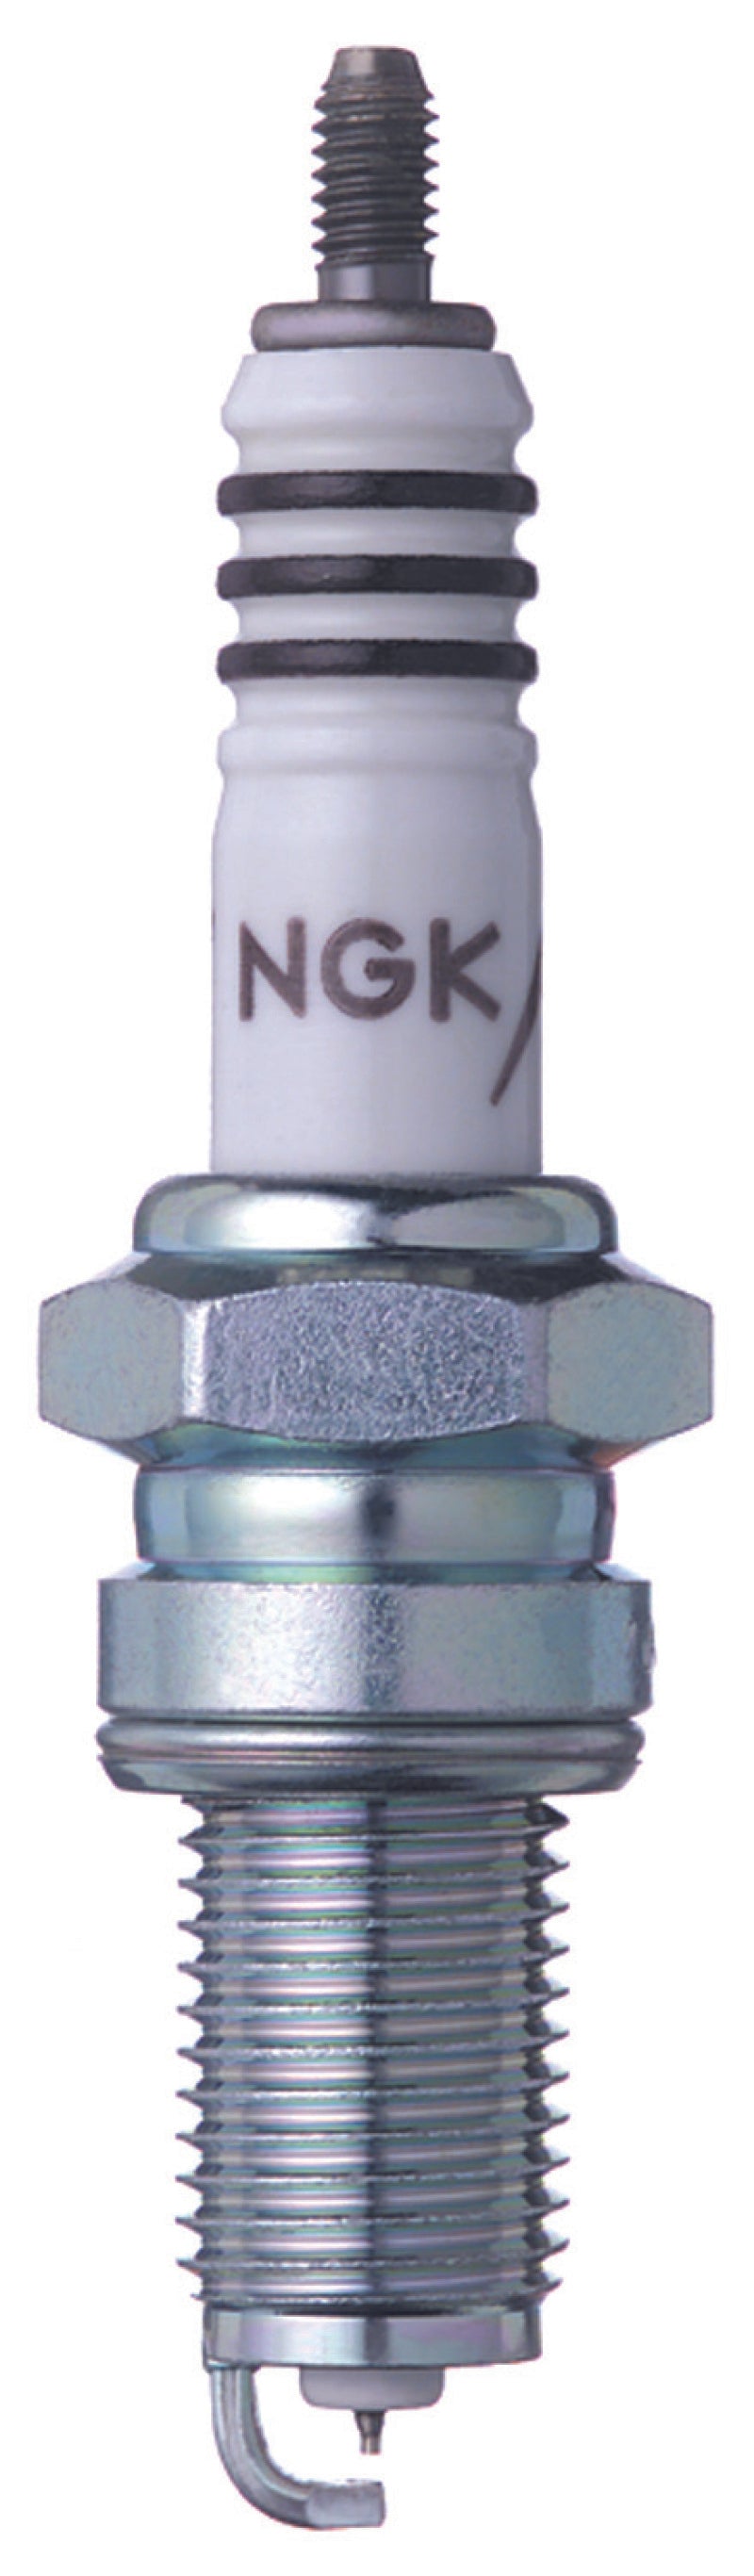 NGK Iridium Spark Plug Box of 4 (DPR8EIX-9)